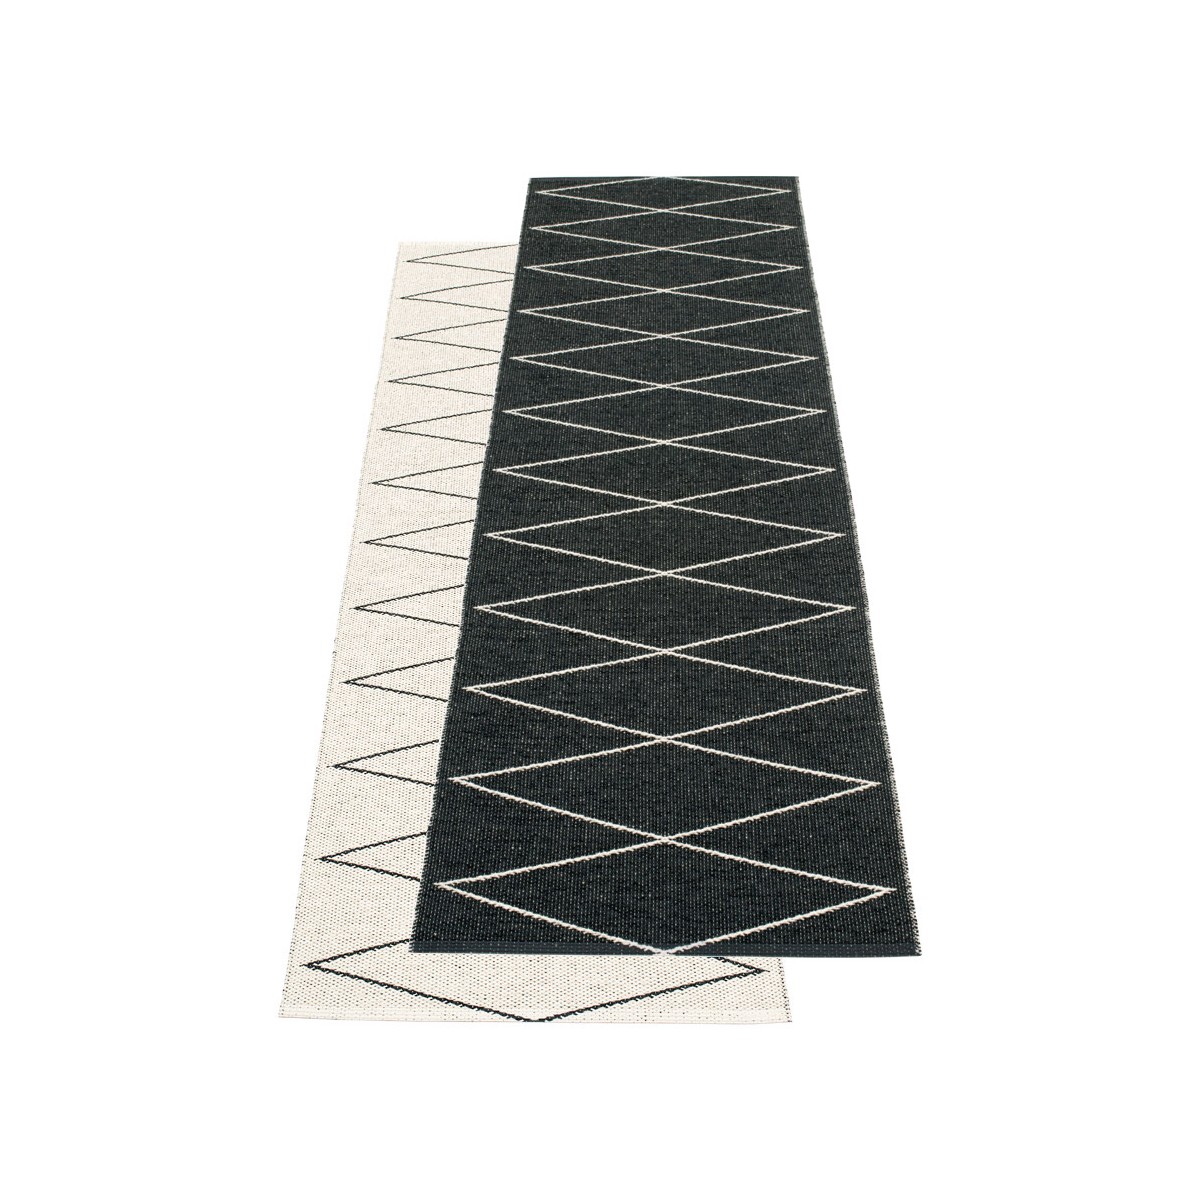 70x160 cm - Max rug